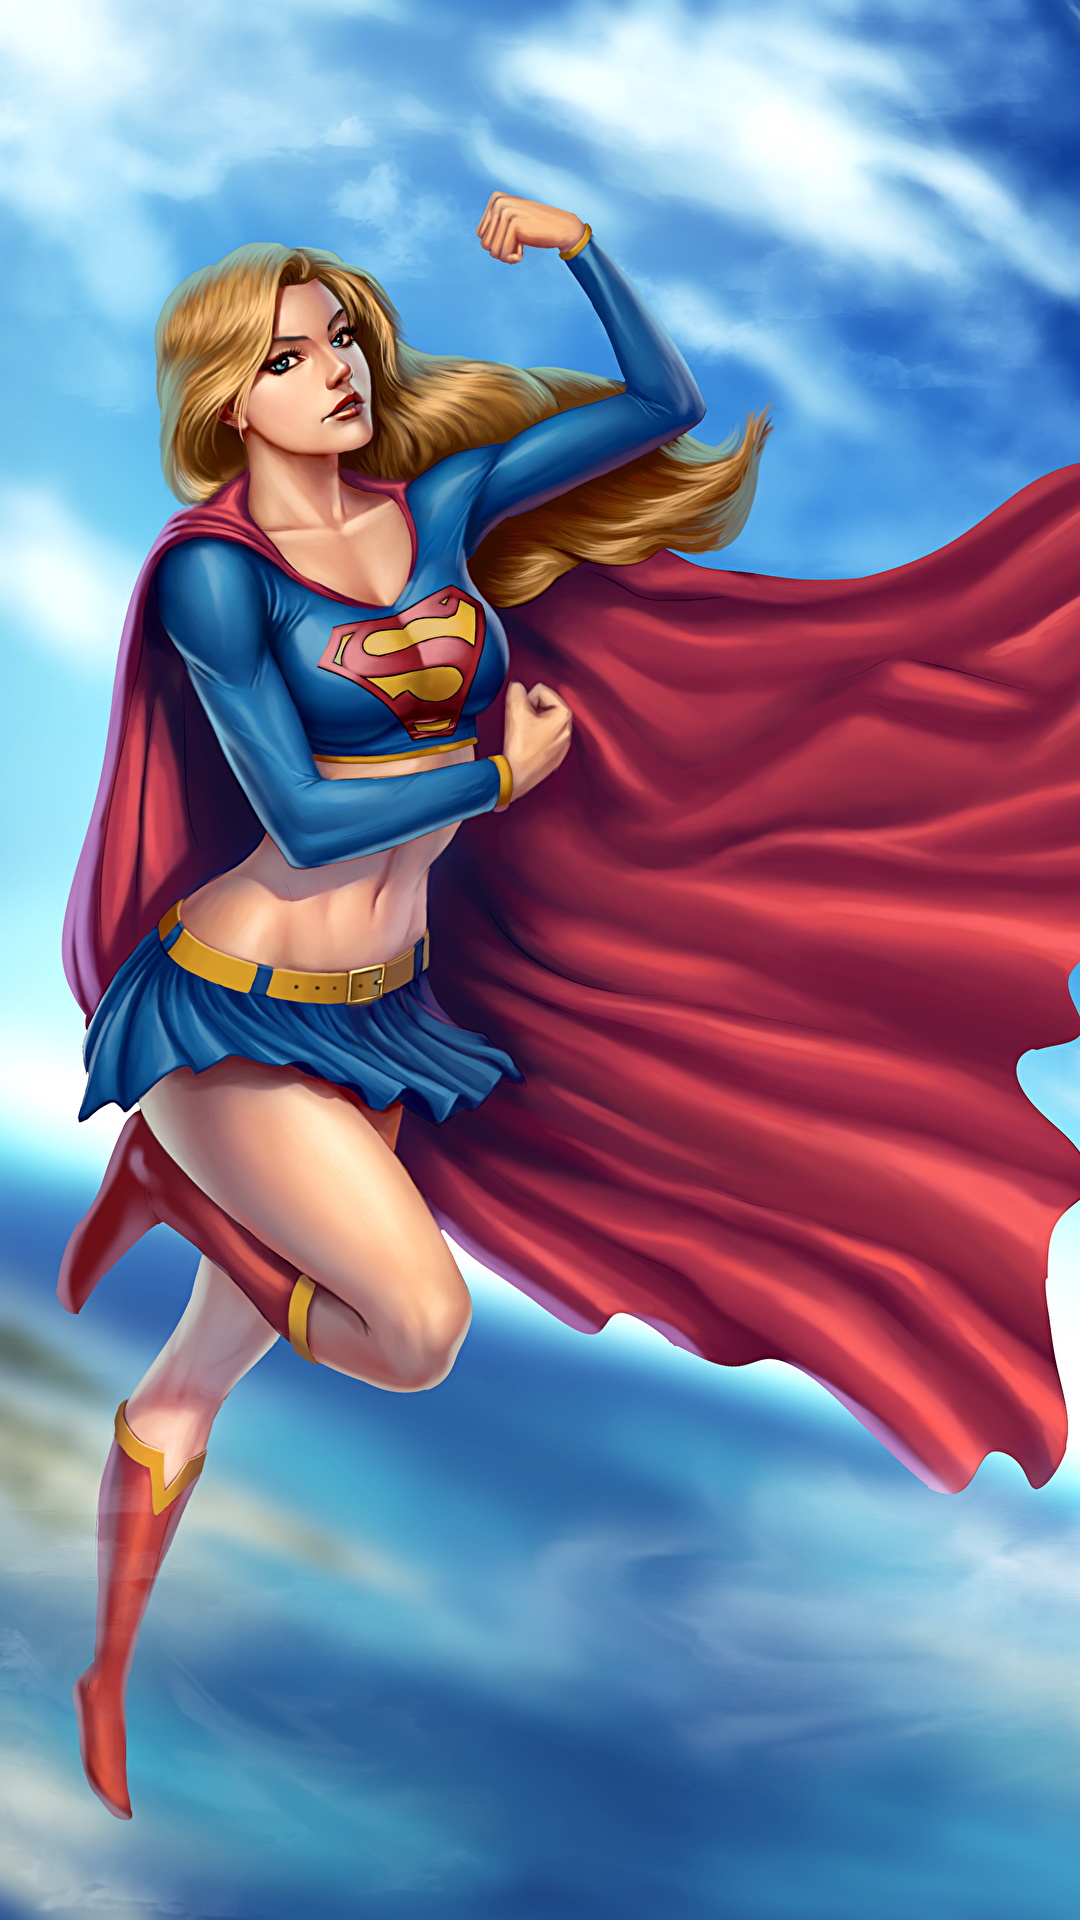 壁紙 1080x19 コミックヒーロー スーパーガールヒーロー マント ファンタジー 少女 ダウンロード 写真